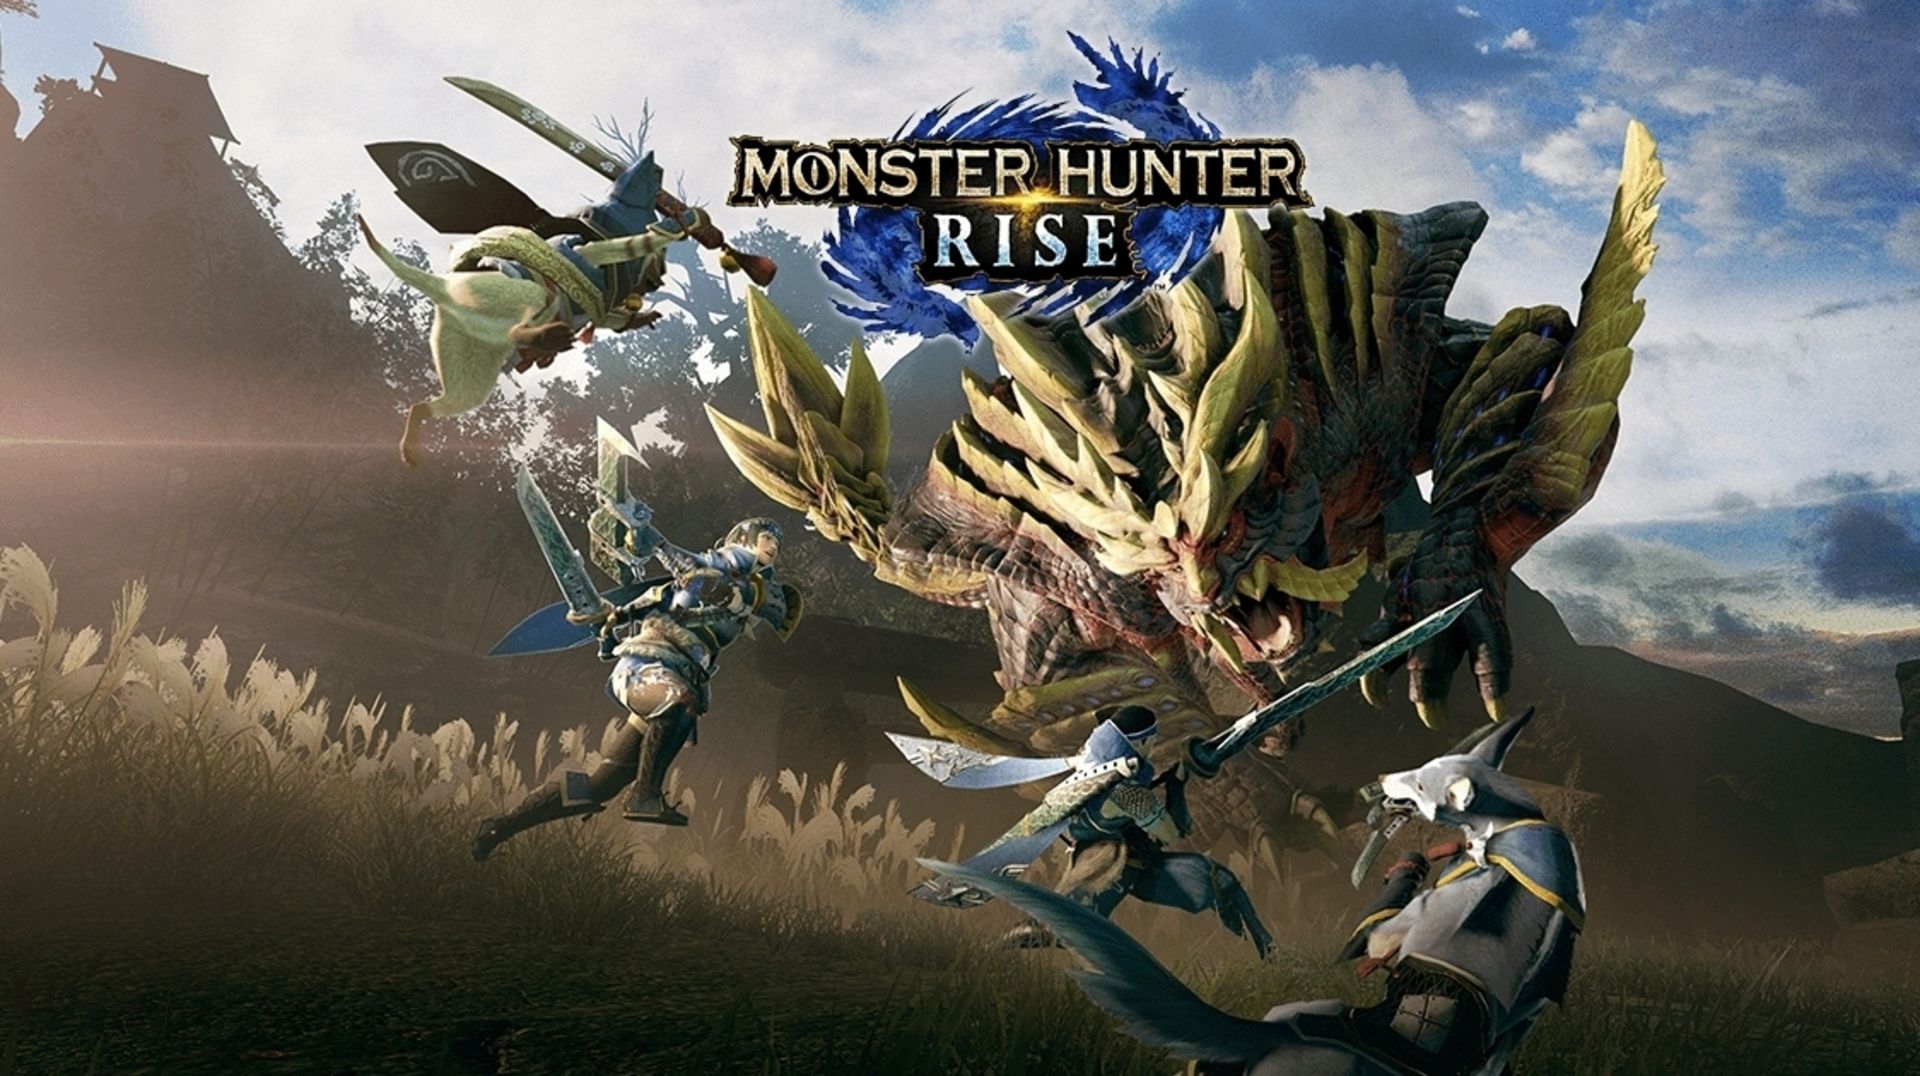 Mostro Hinter Rise ottiene DLC gratuito